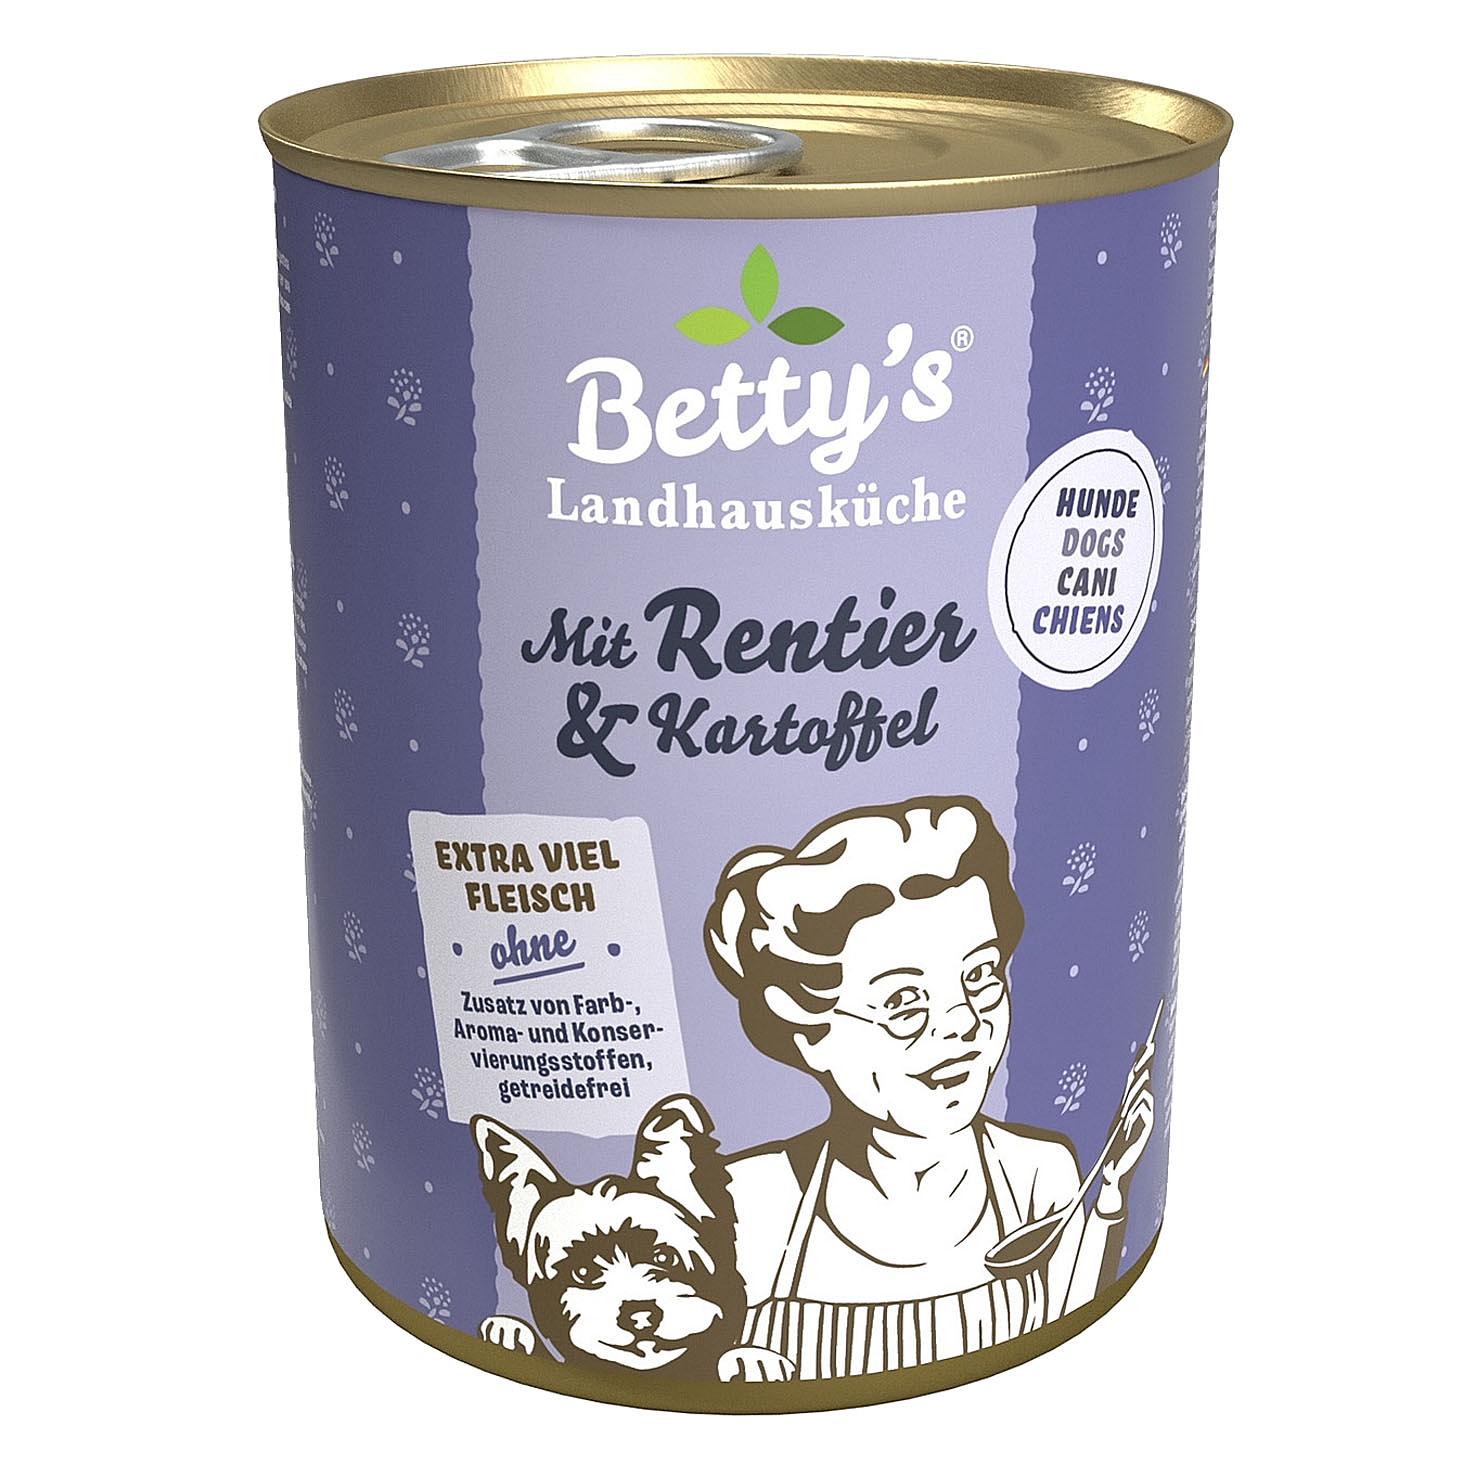 Betty's Landhausküche Rentier & Kartoffel 400g